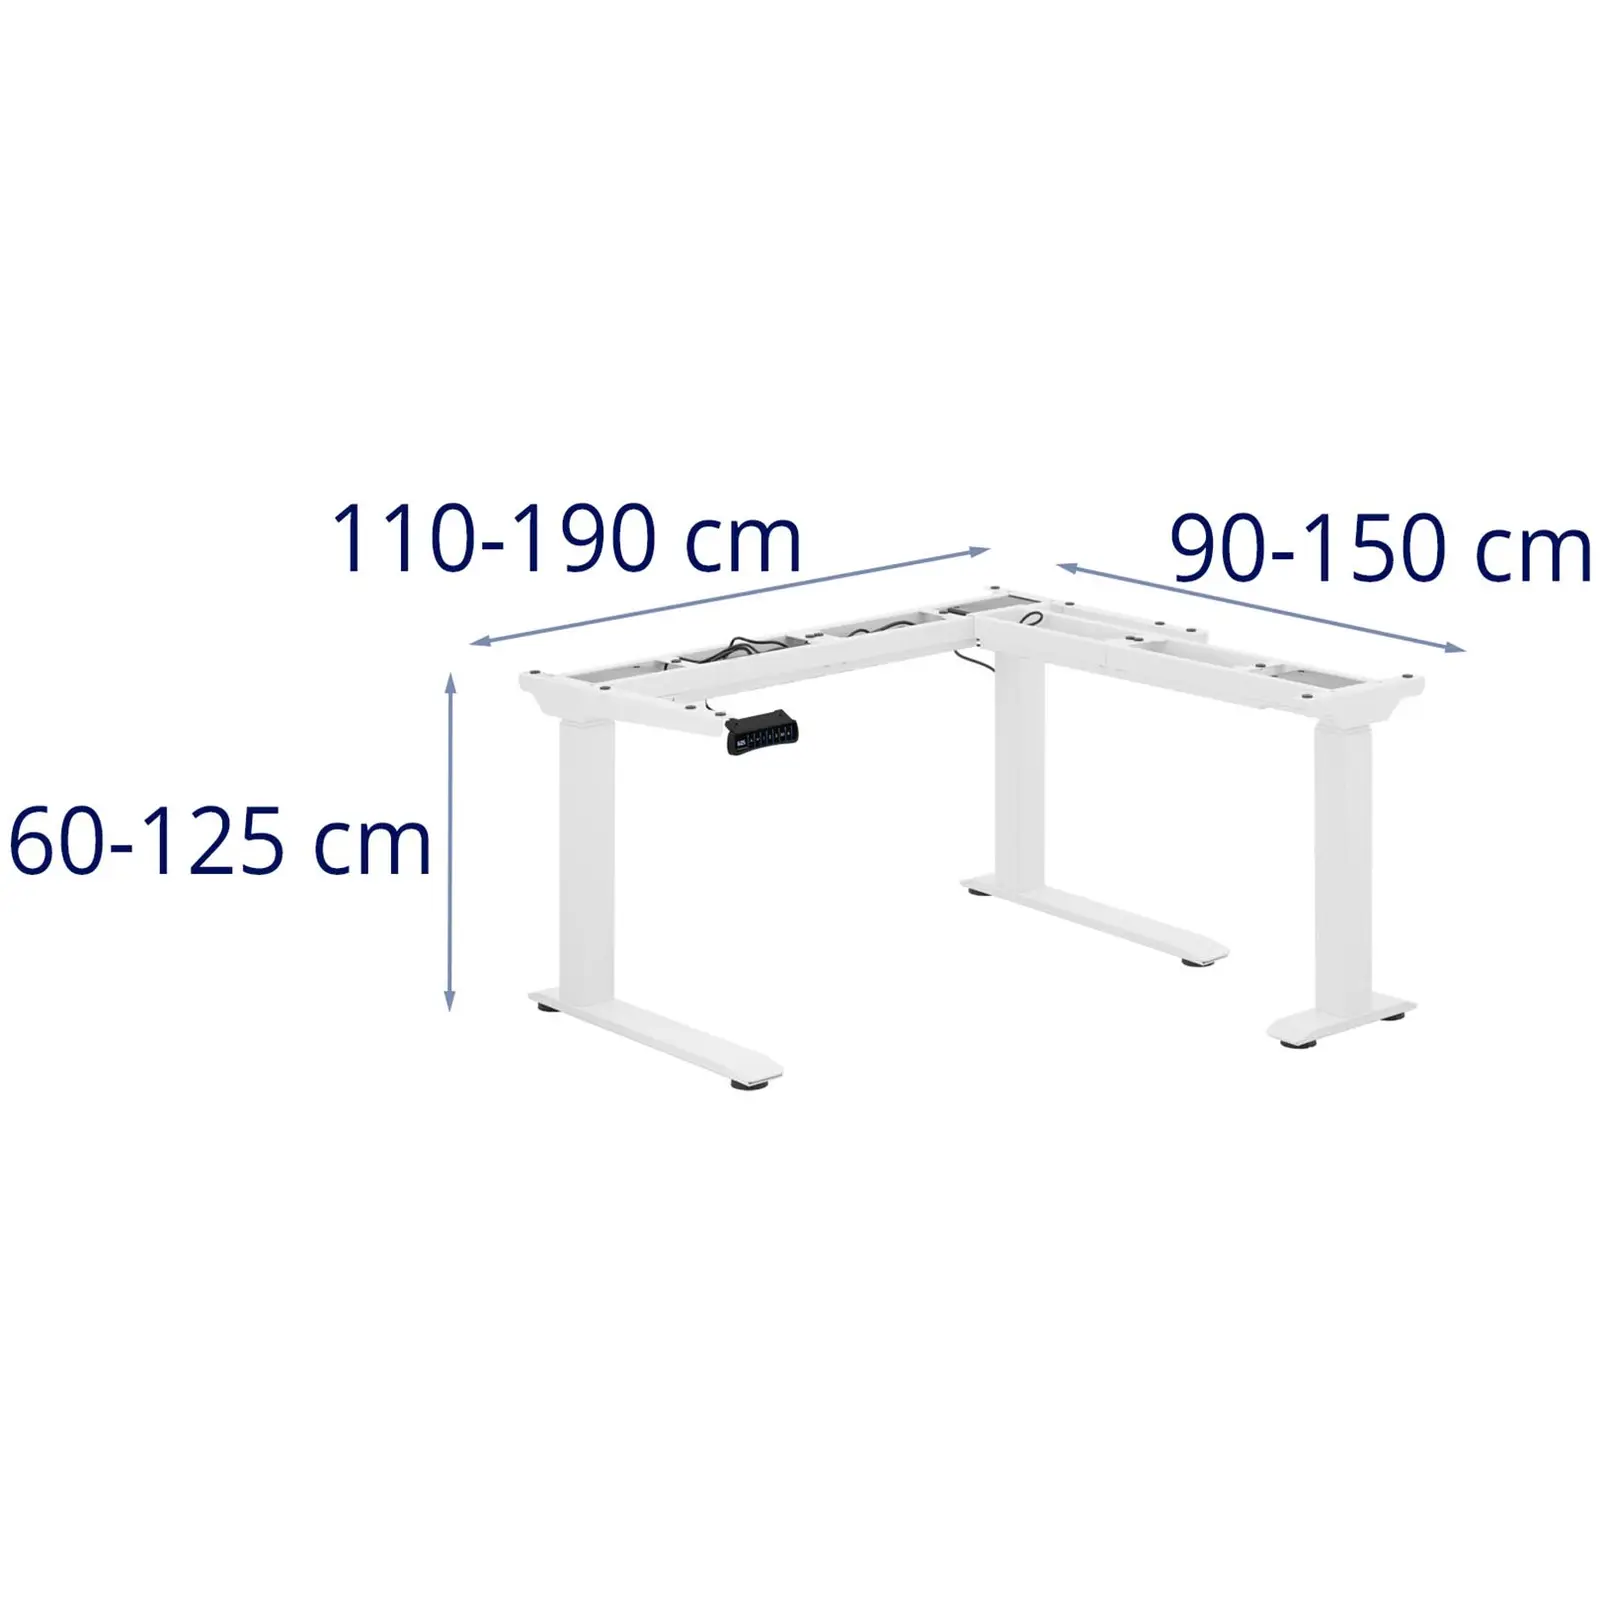 Výškovo nastaviteľný rohový rám písacieho stola - Výška: 60 - 125 cm - Šírka: 110 - 190 cm / 90 - 150 cm